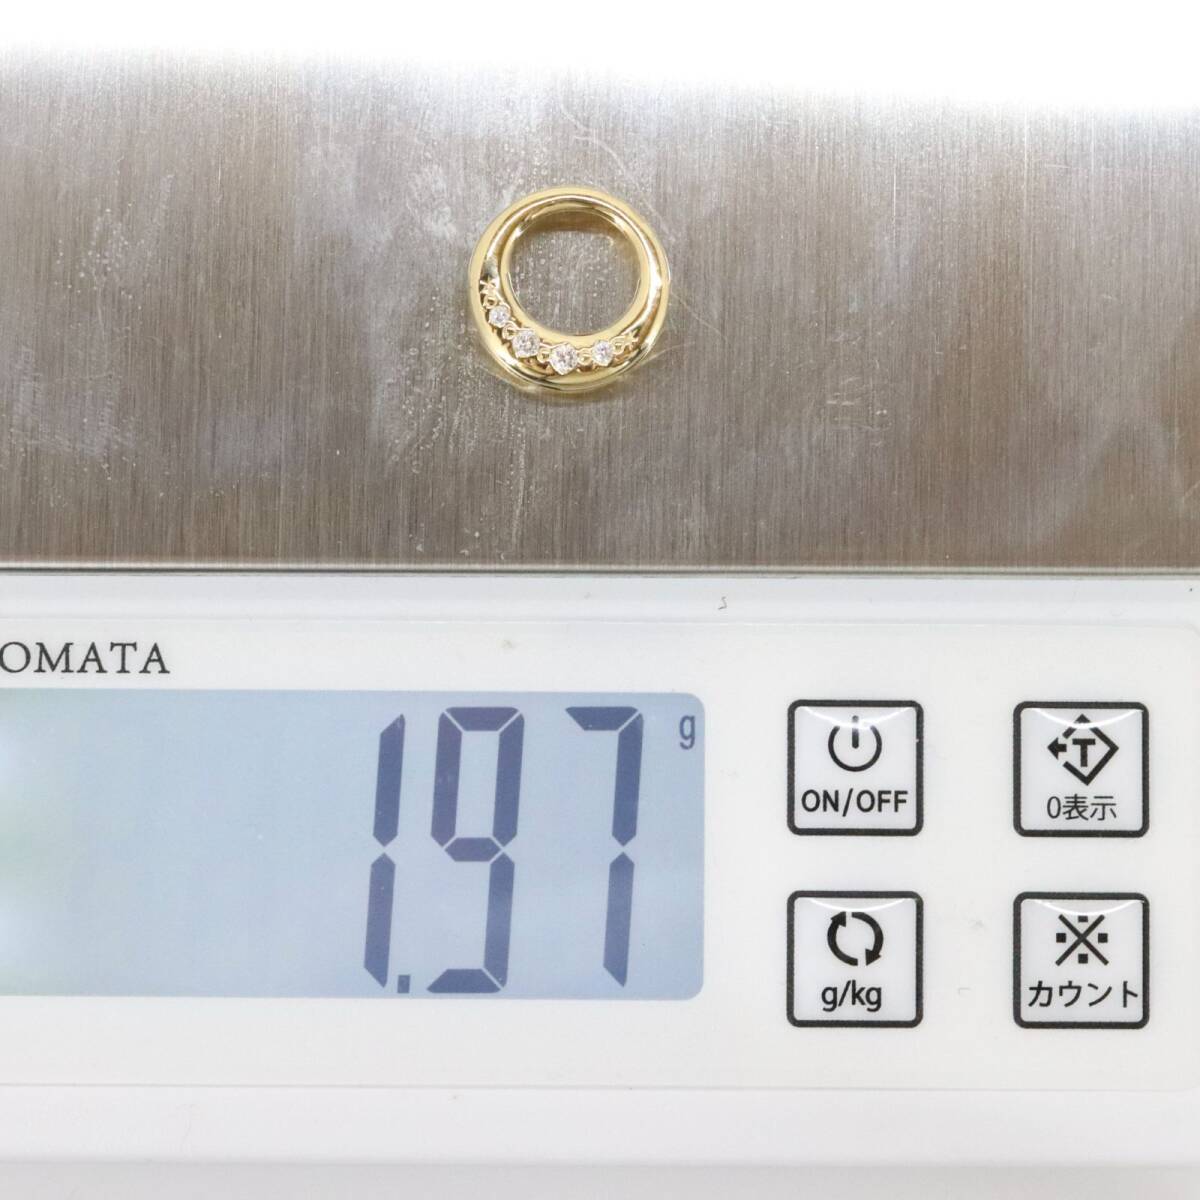 田崎真珠 ネックレストップ K18(750) ダイヤモンド 0.06ct サークル ゴールド TASAKI タサキ /24-33